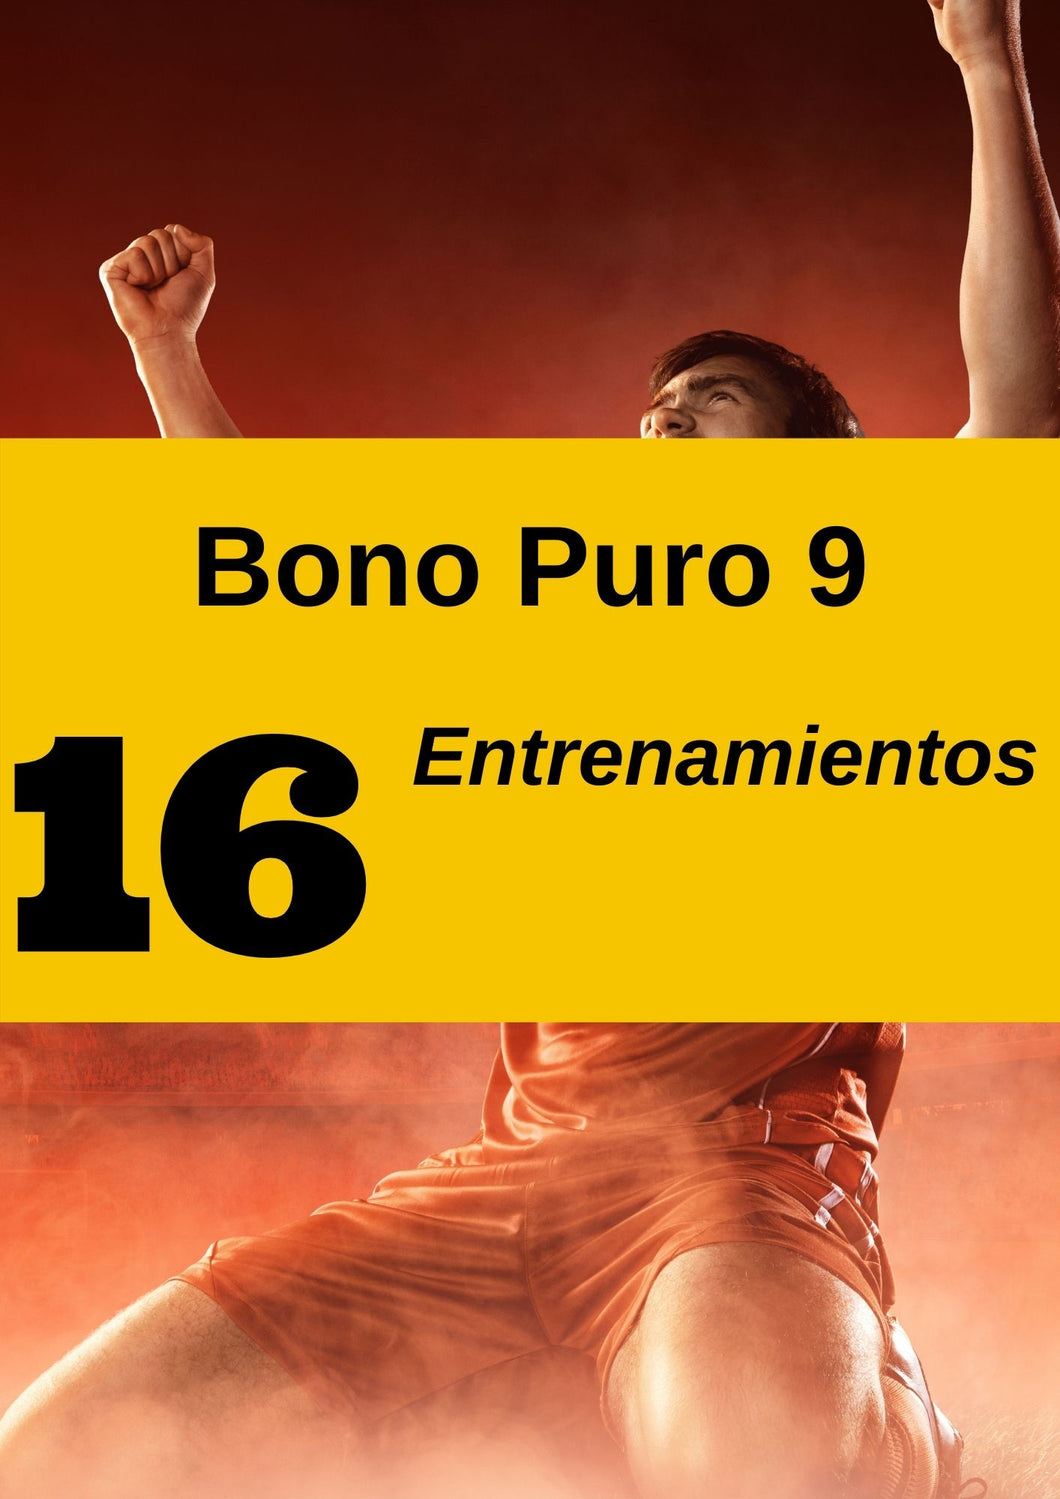 Bono Puro 9 | Perfeccionamiento de pierna no dominante | Análisis y edición de vídeo